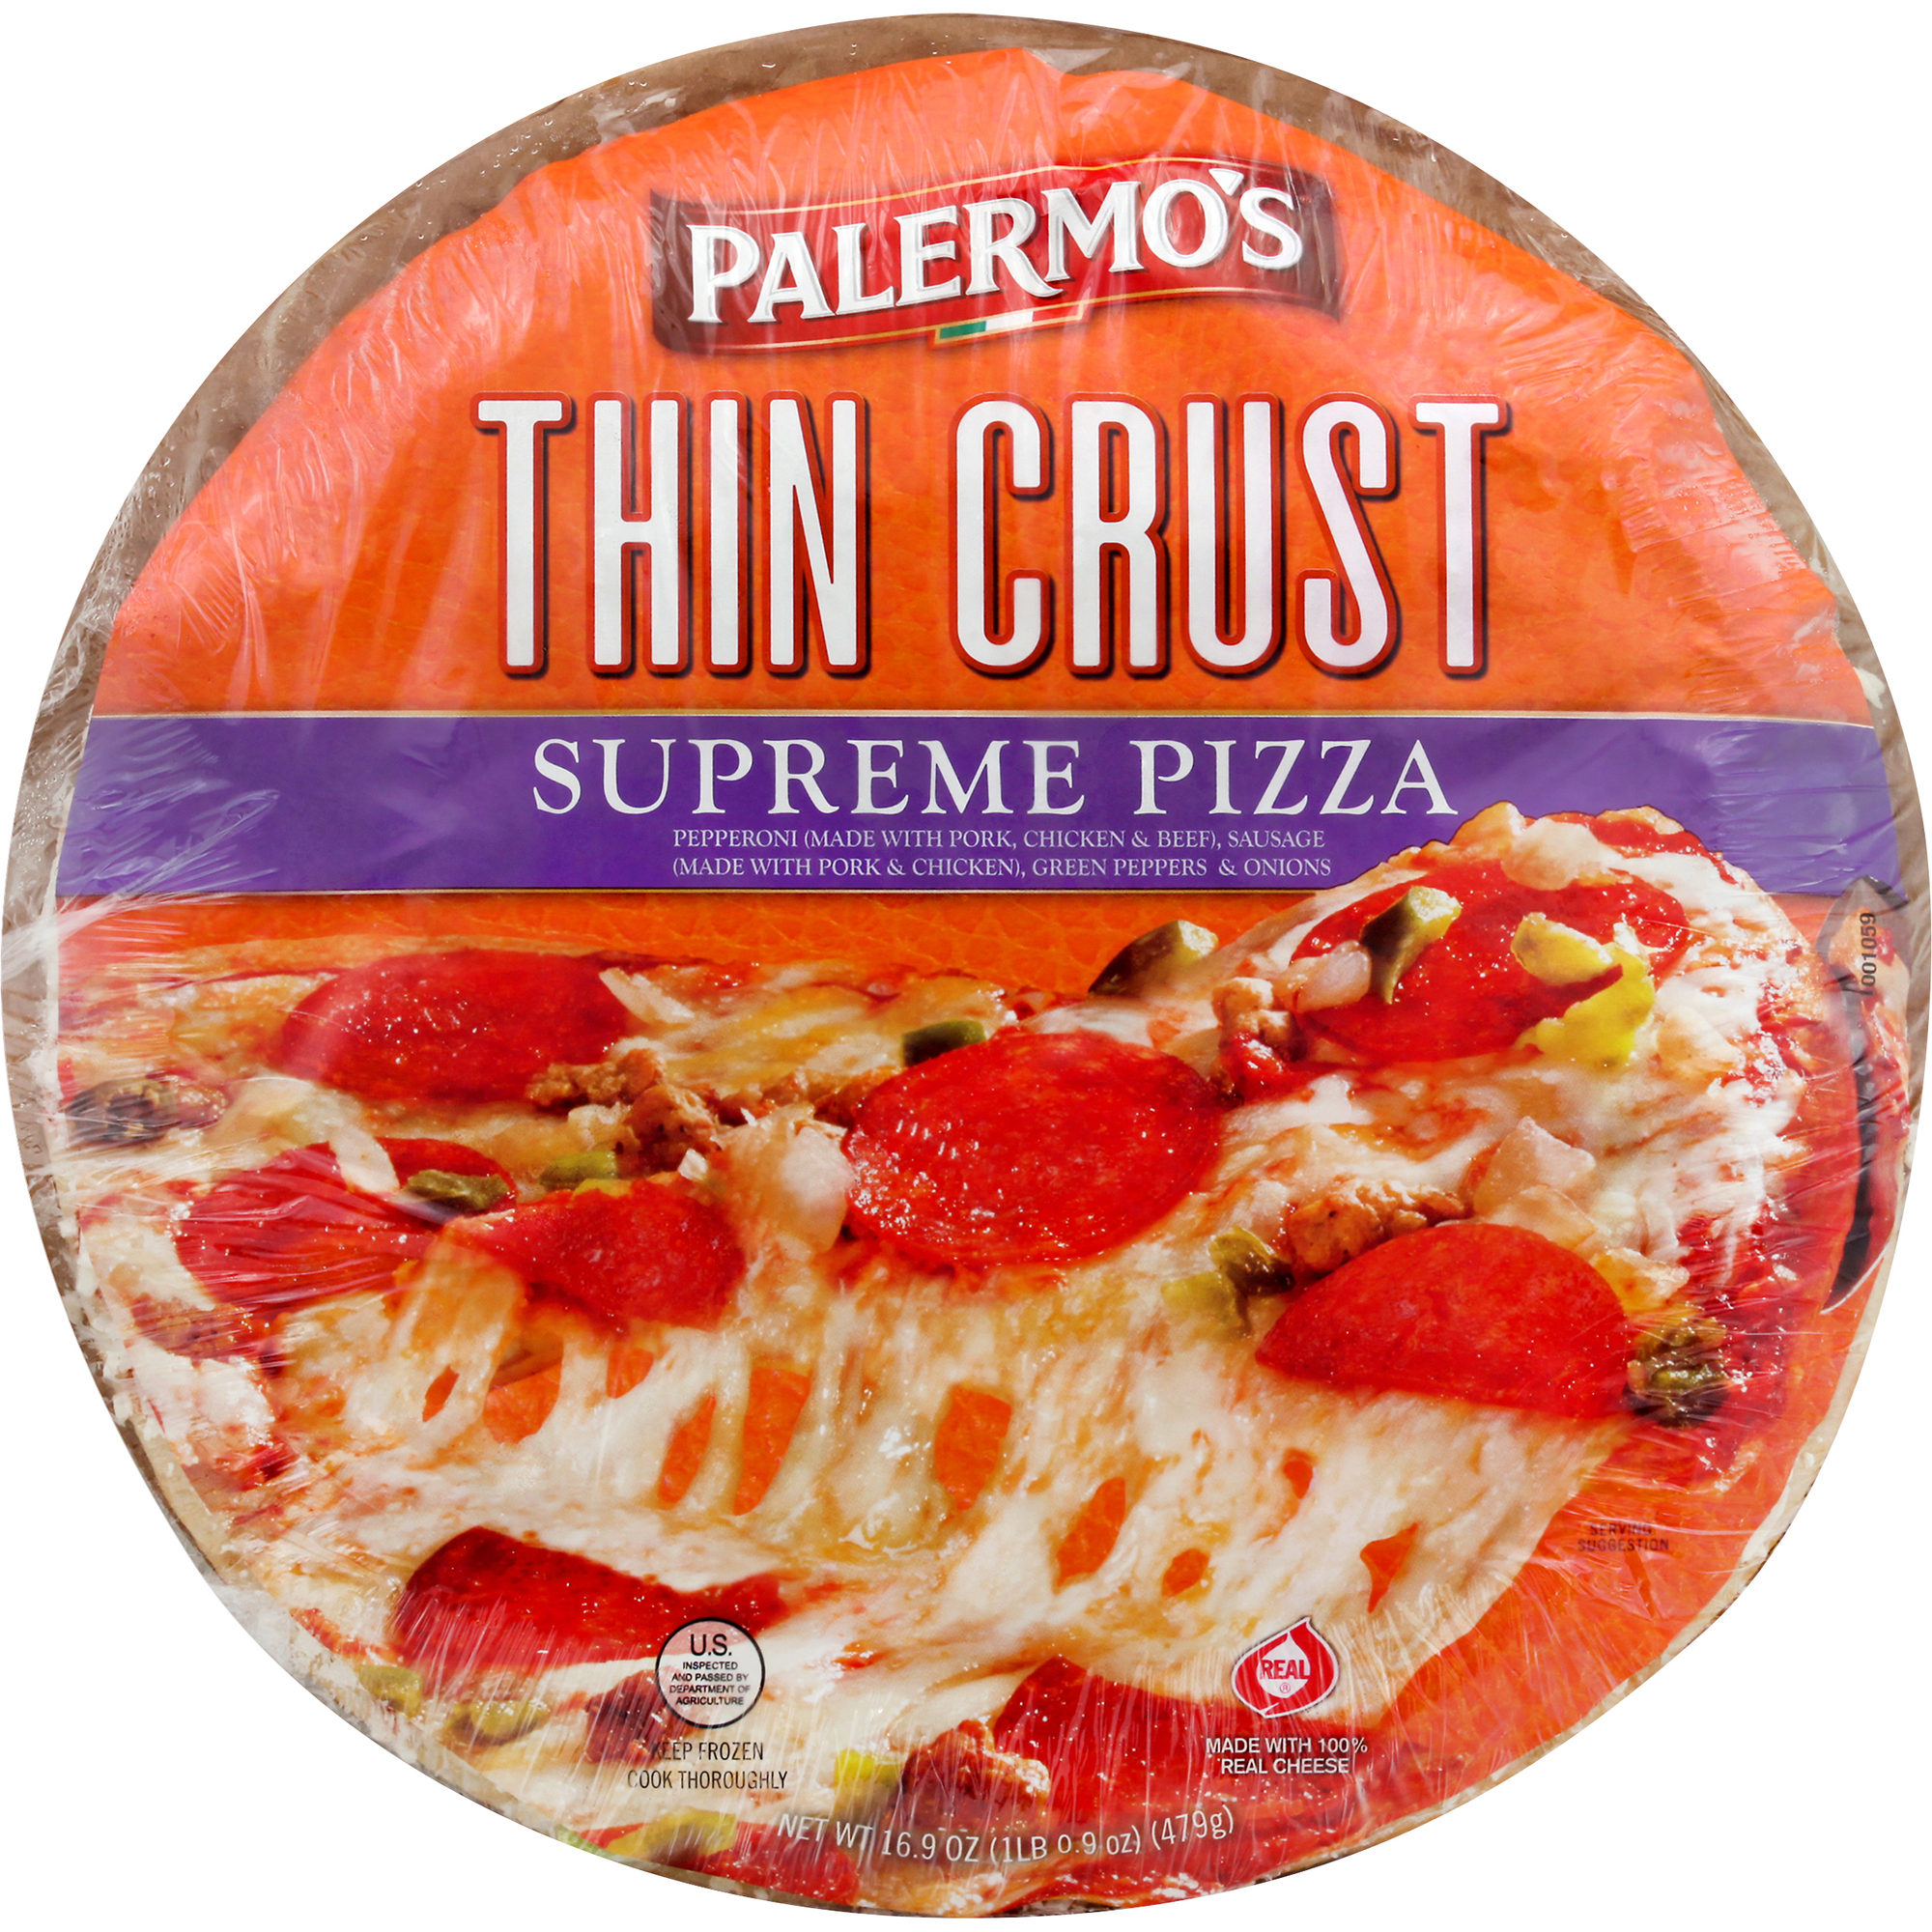 Palermo's Thin Crust Supreme Pizza 12 units per case 16.9 oz